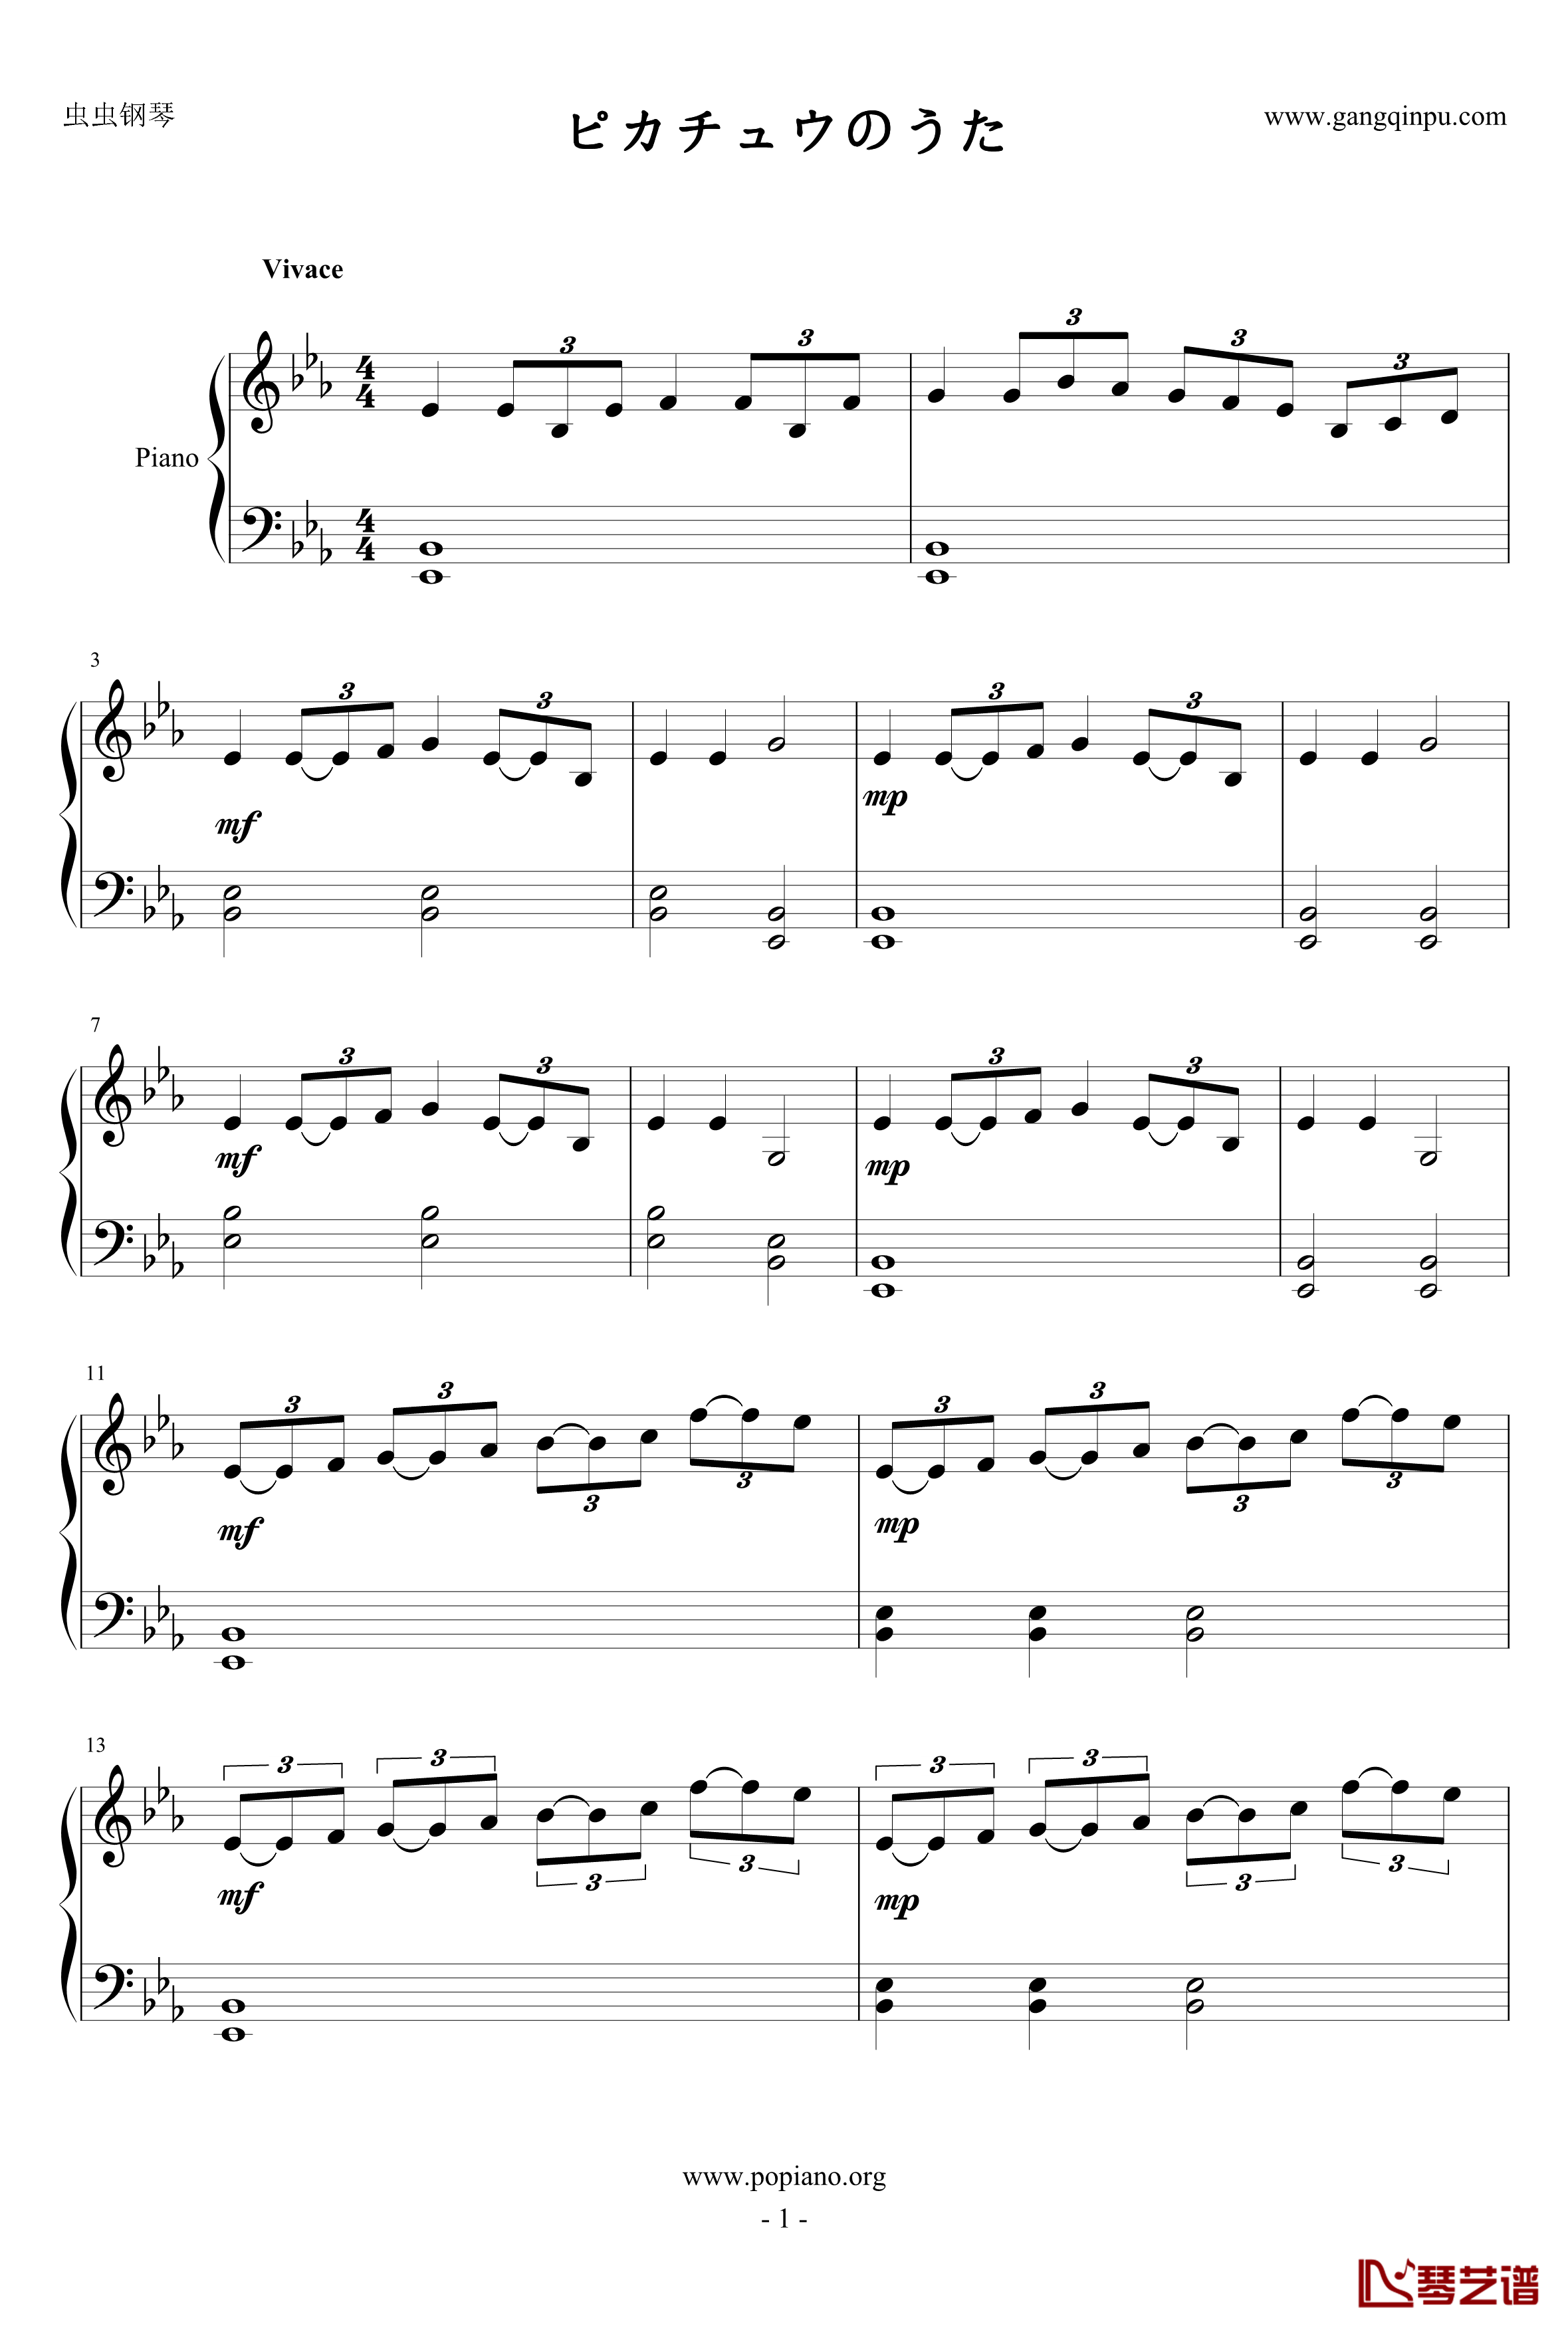 皮卡丘之歌钢琴谱-神奇宝贝-Z角色歌-皮卡丘1